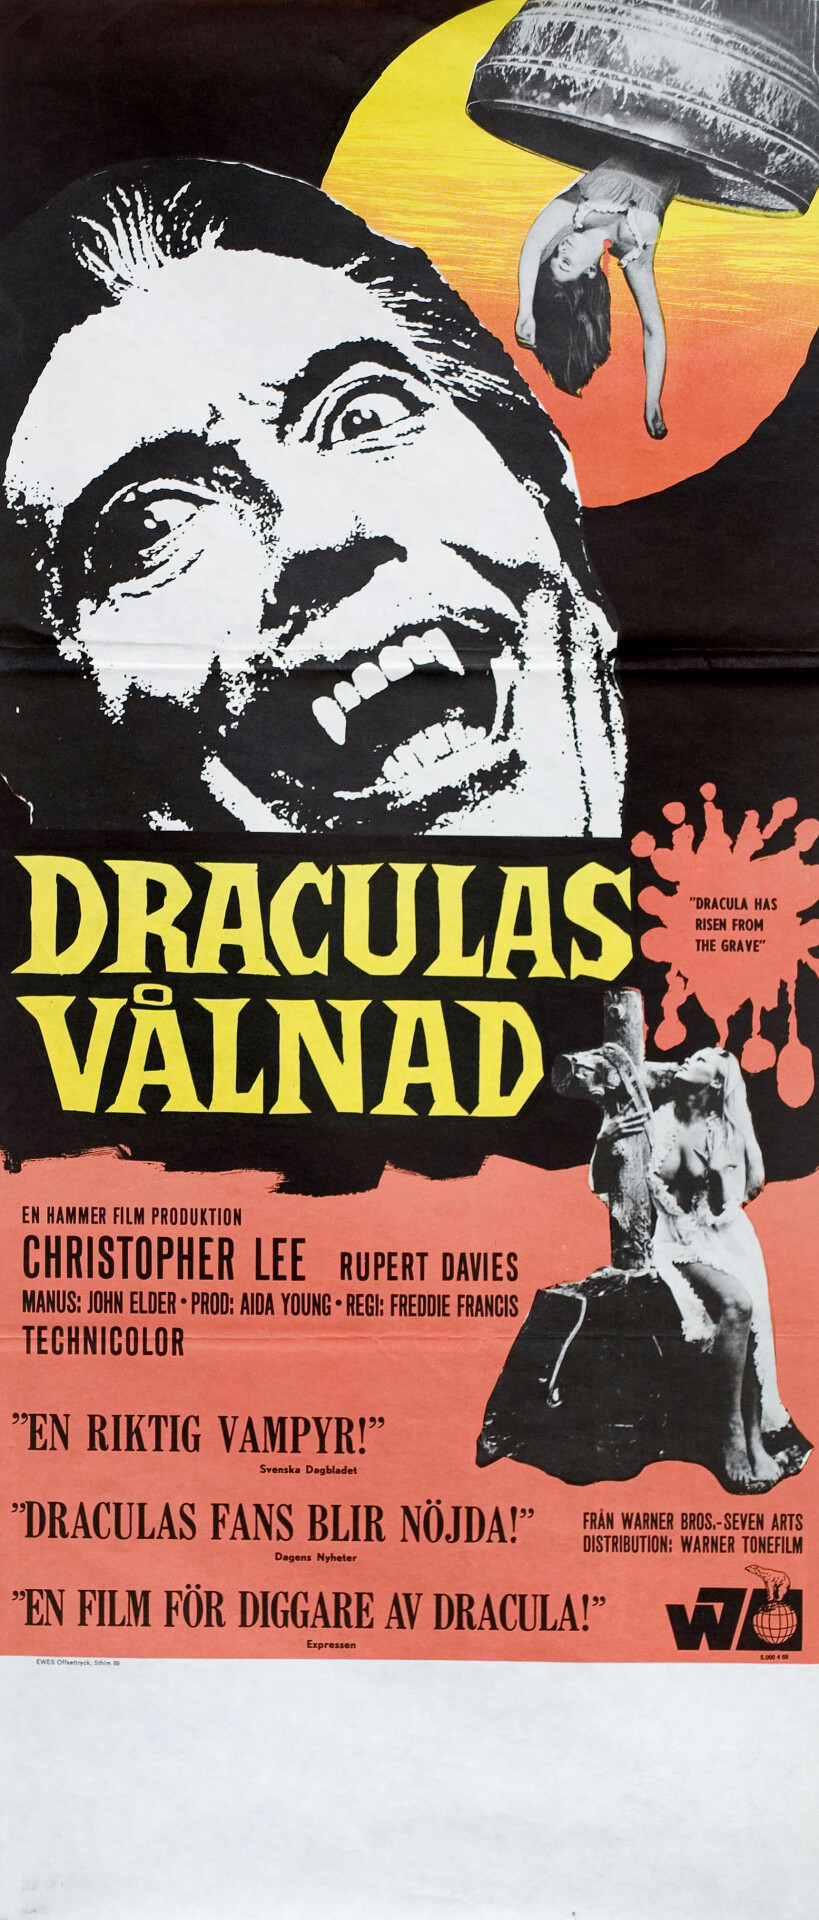 Дракула восстал из могилы (Dracula Has Risen from the Grave, 1968), режиссёр Фредди Фрэнсис, шведский постер к фильму (Hummer horror, 1969 год)